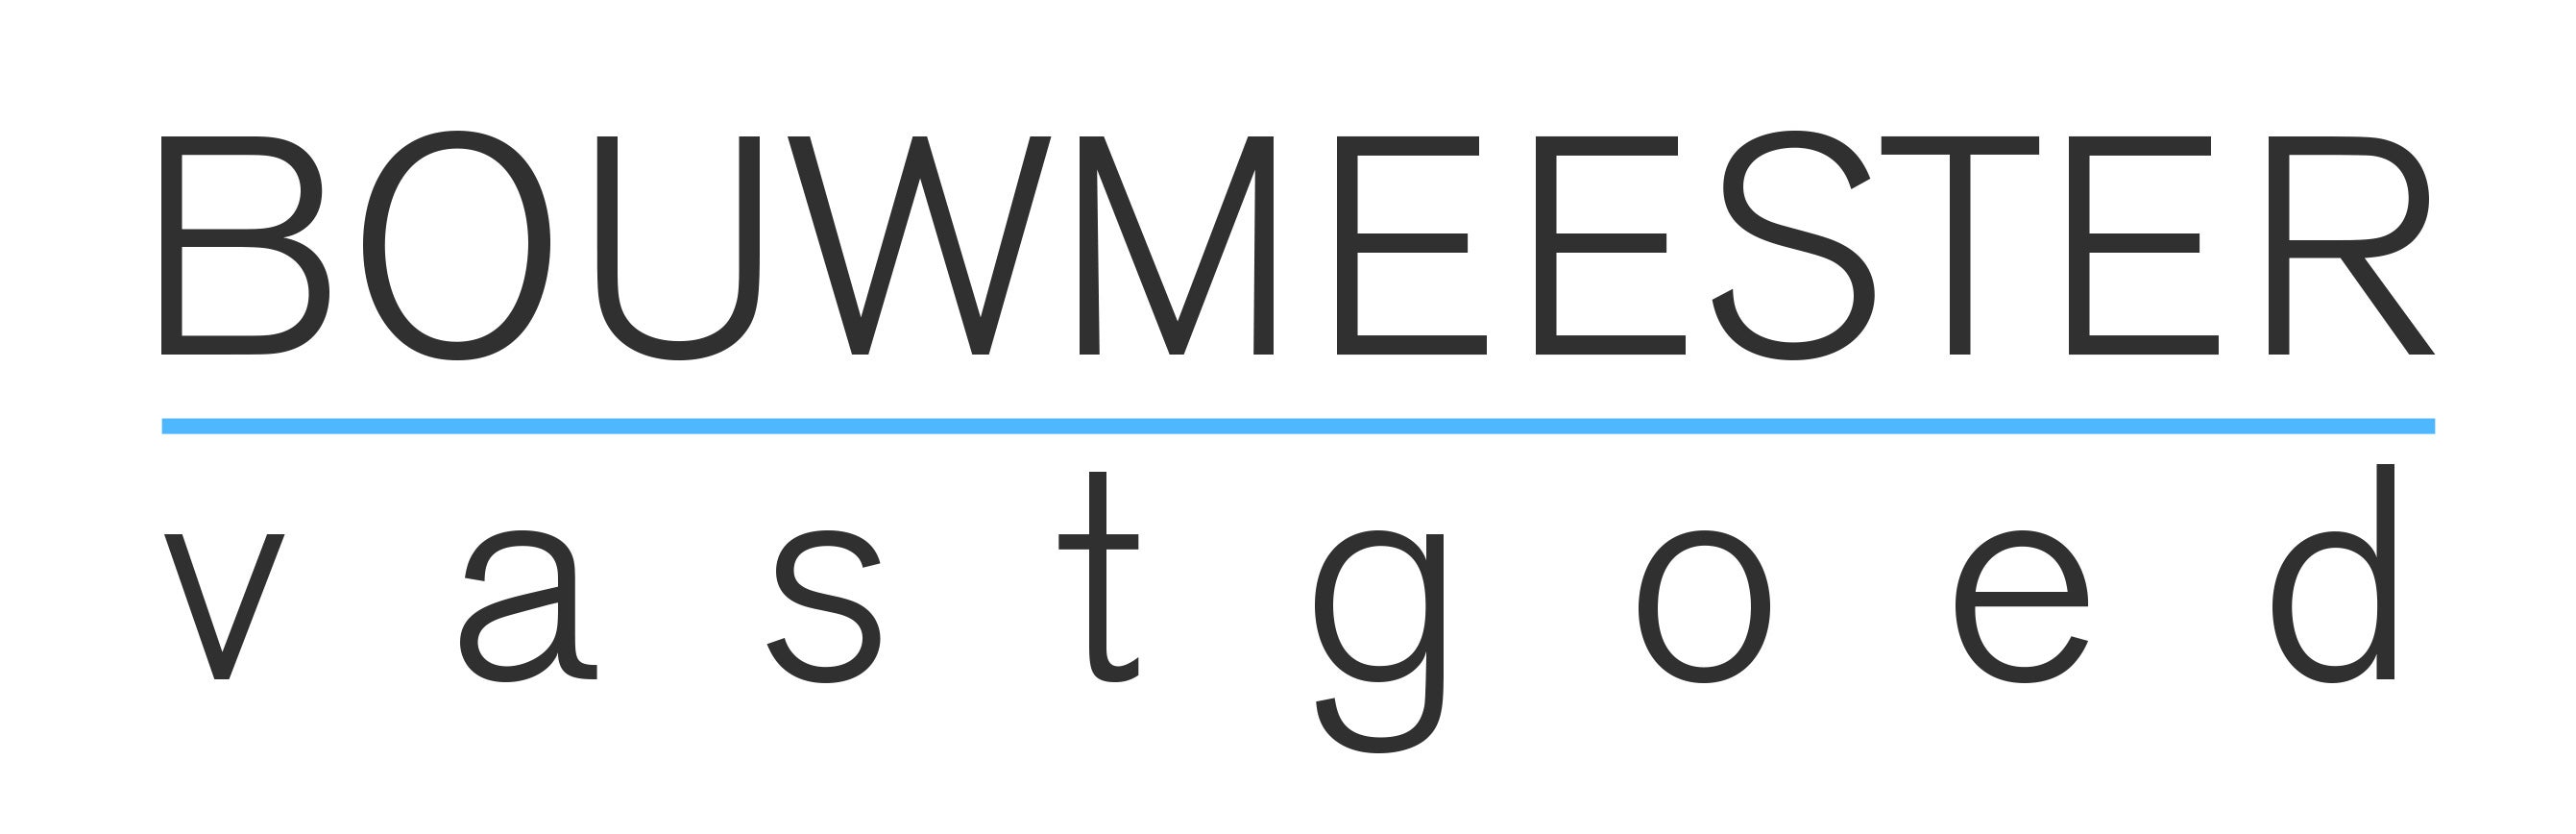 Partner logo | Bouwmeester Vastgoed